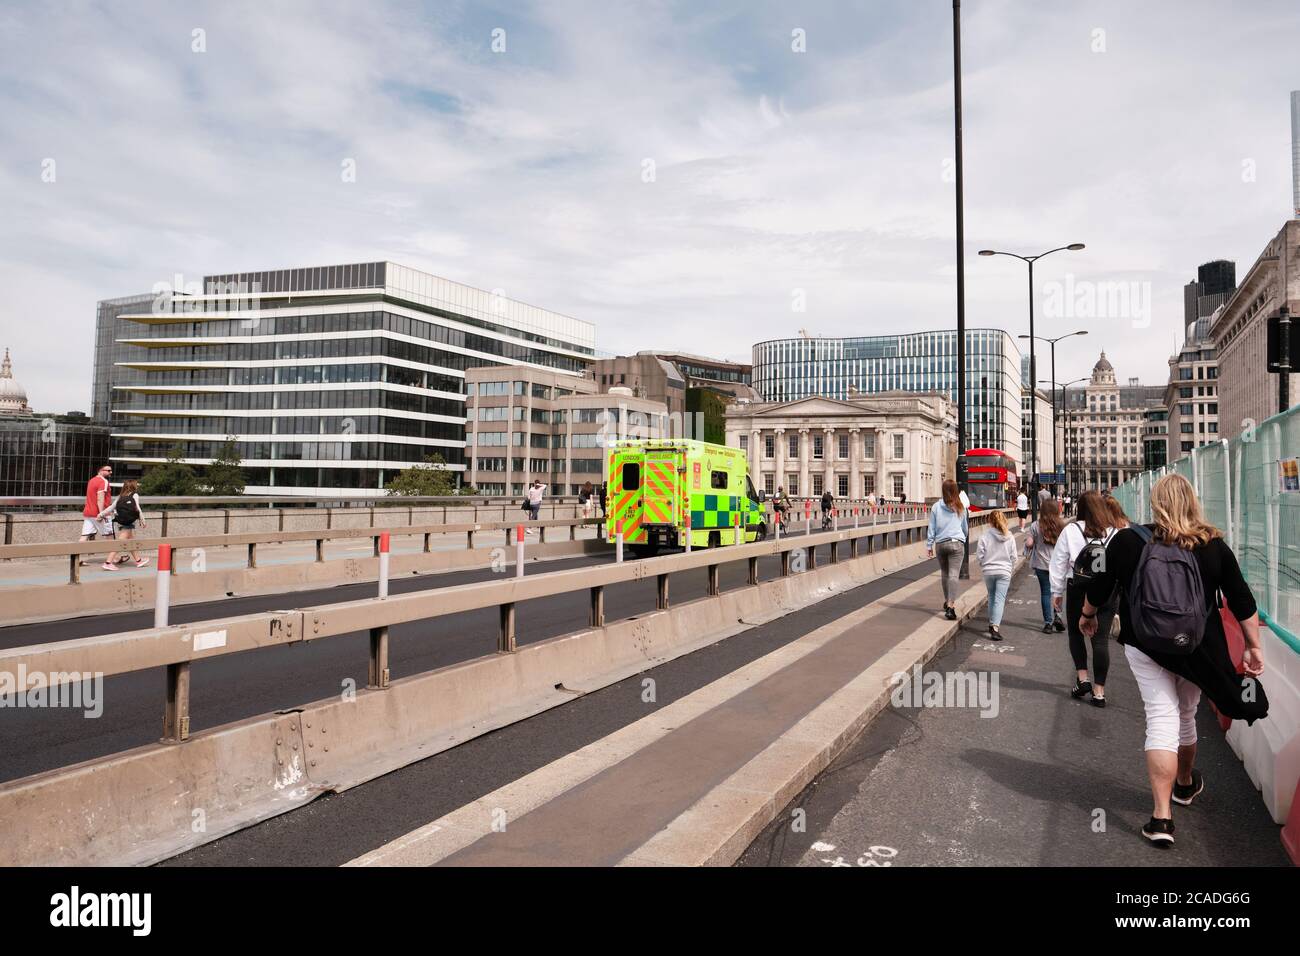 Un véhicule du NHS London Ambulance Service traversant la rivière Thames à travers le pont de Londres, dans le cadre de la pandémie COVID-19. Banque D'Images